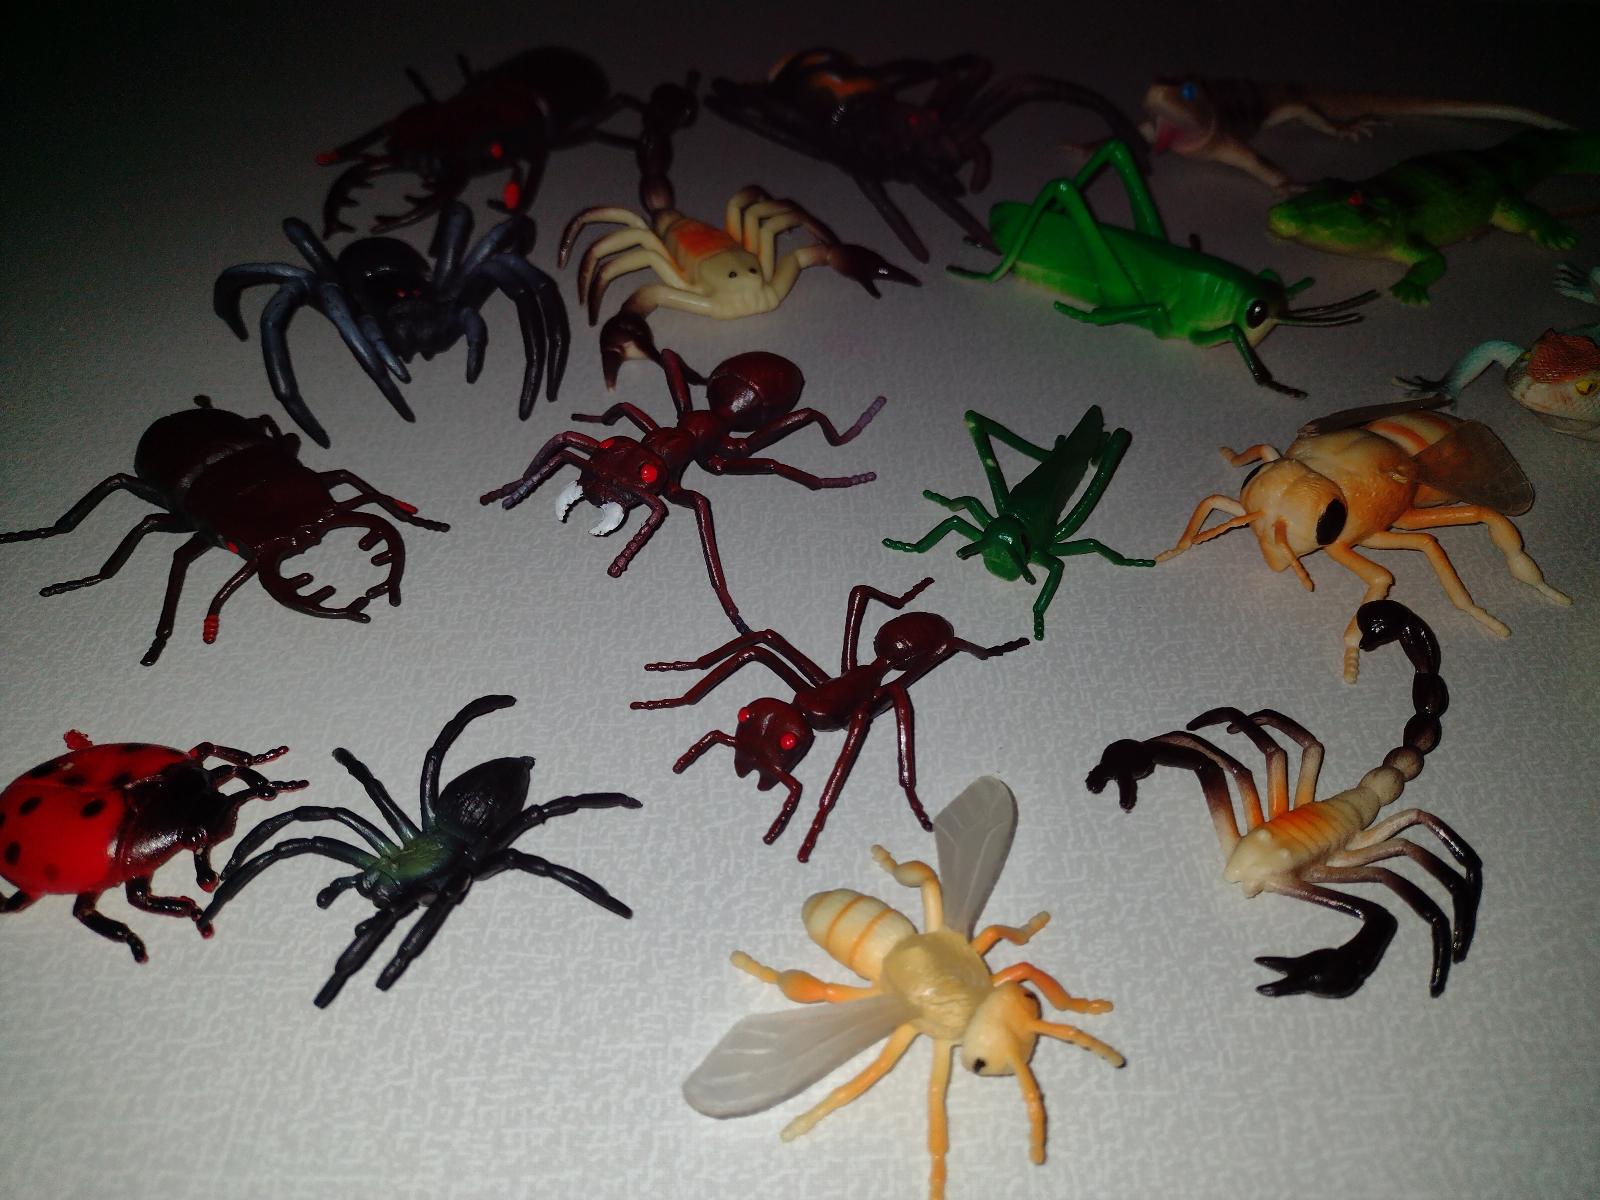 Realistické figurky hmyzu, členovců a plazů  - Děti